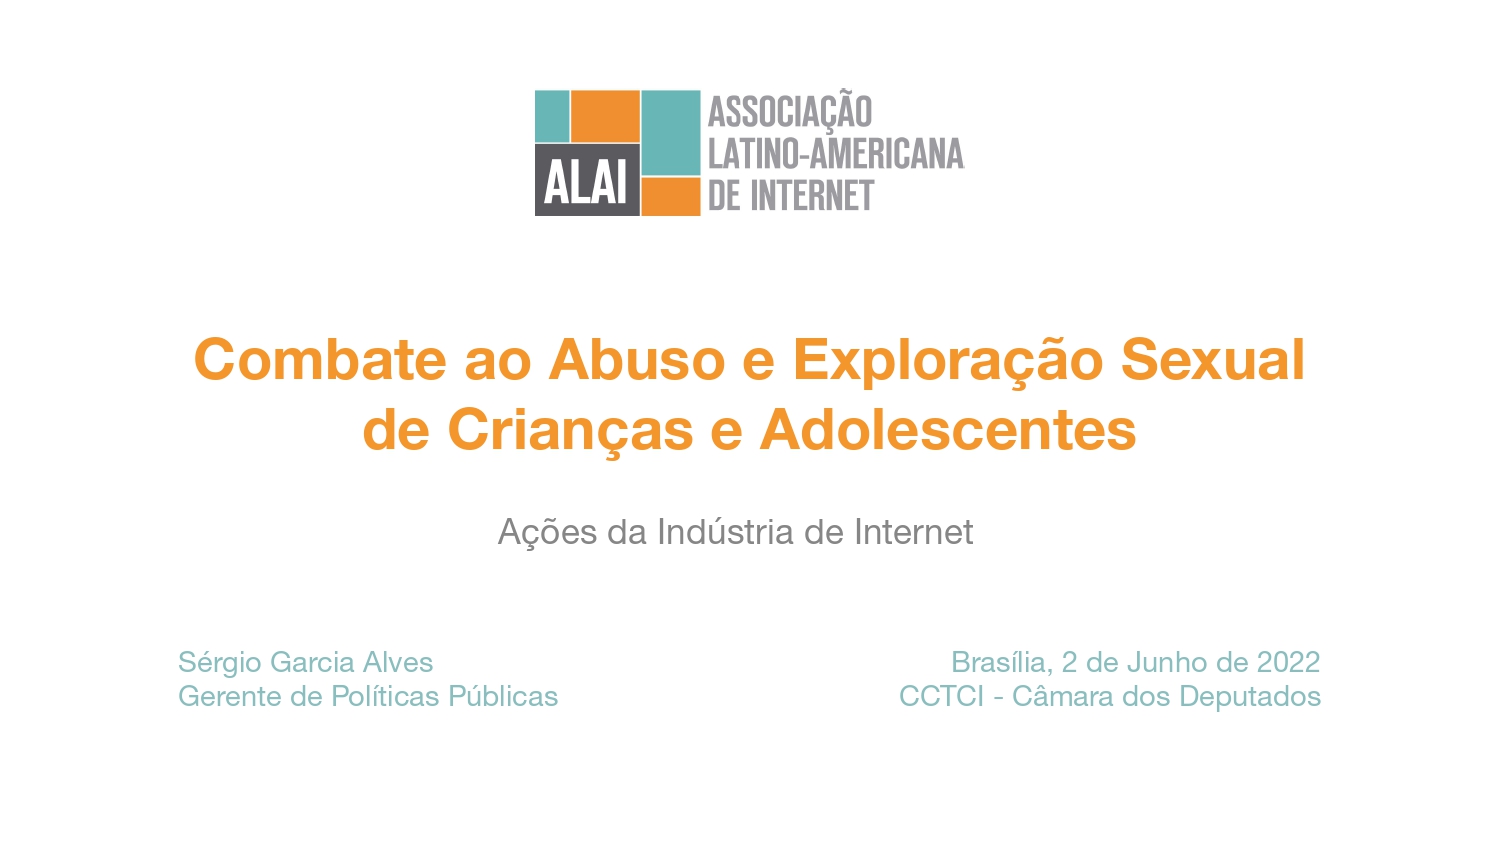 Brasil: Ações da Indústria da Internet no Combate ao Abuso e Exploração Sexual de Crianças e Adolescentes